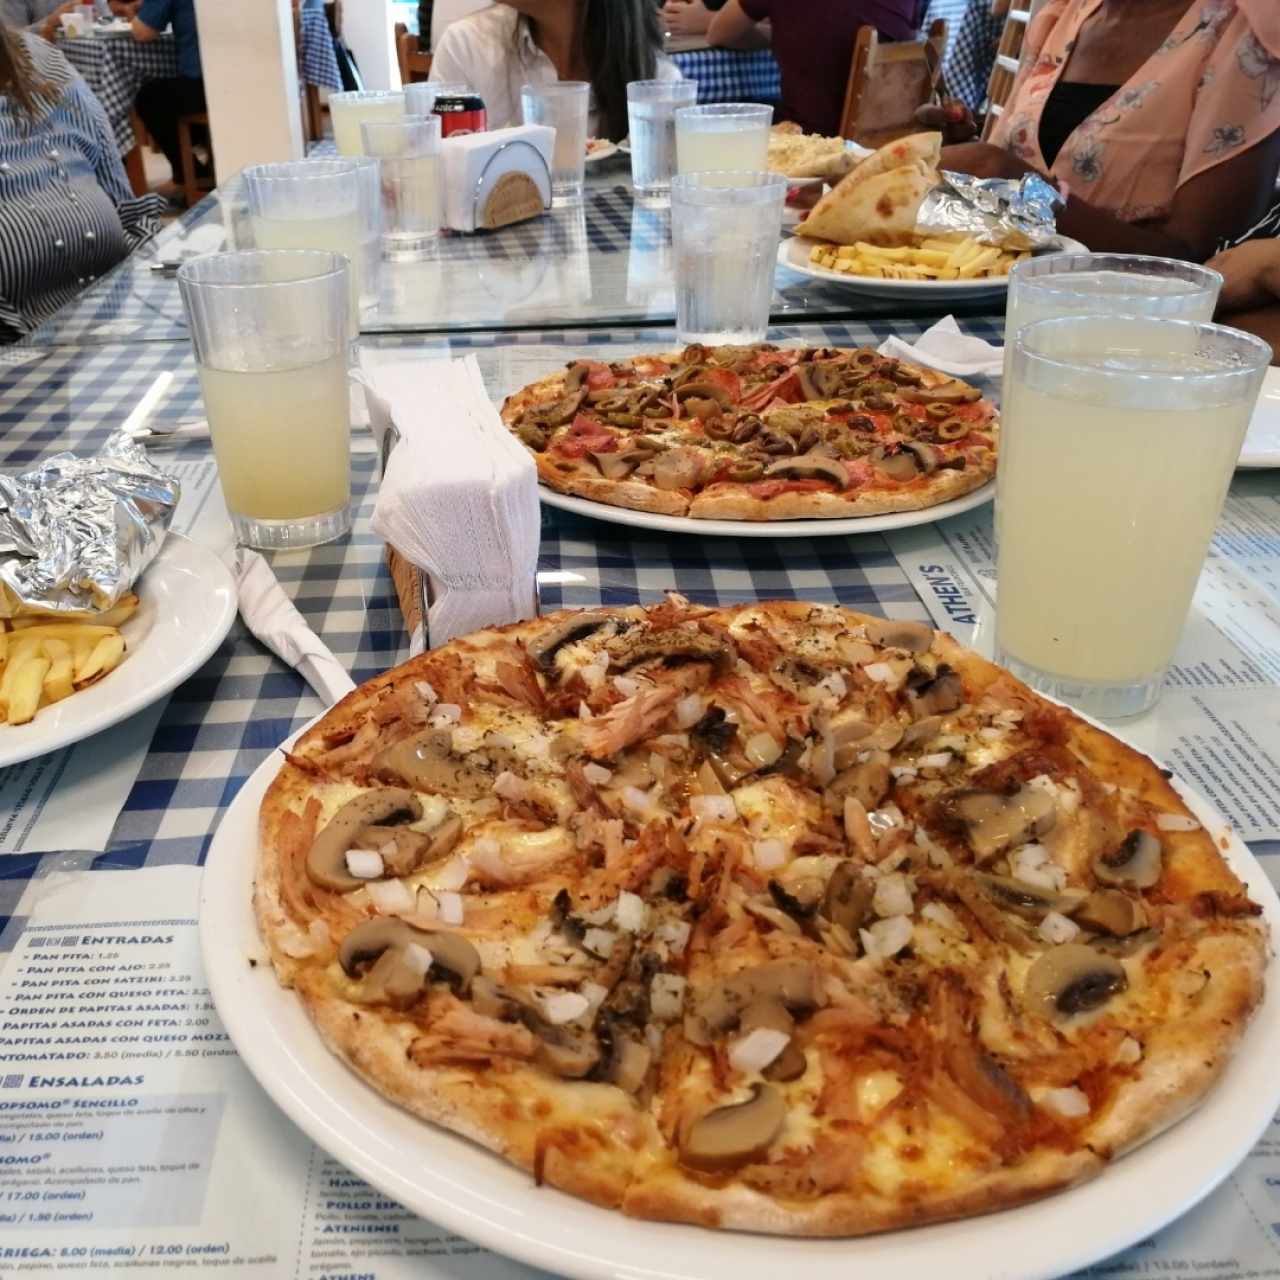 Pizza Athen's y Pizza Combinada